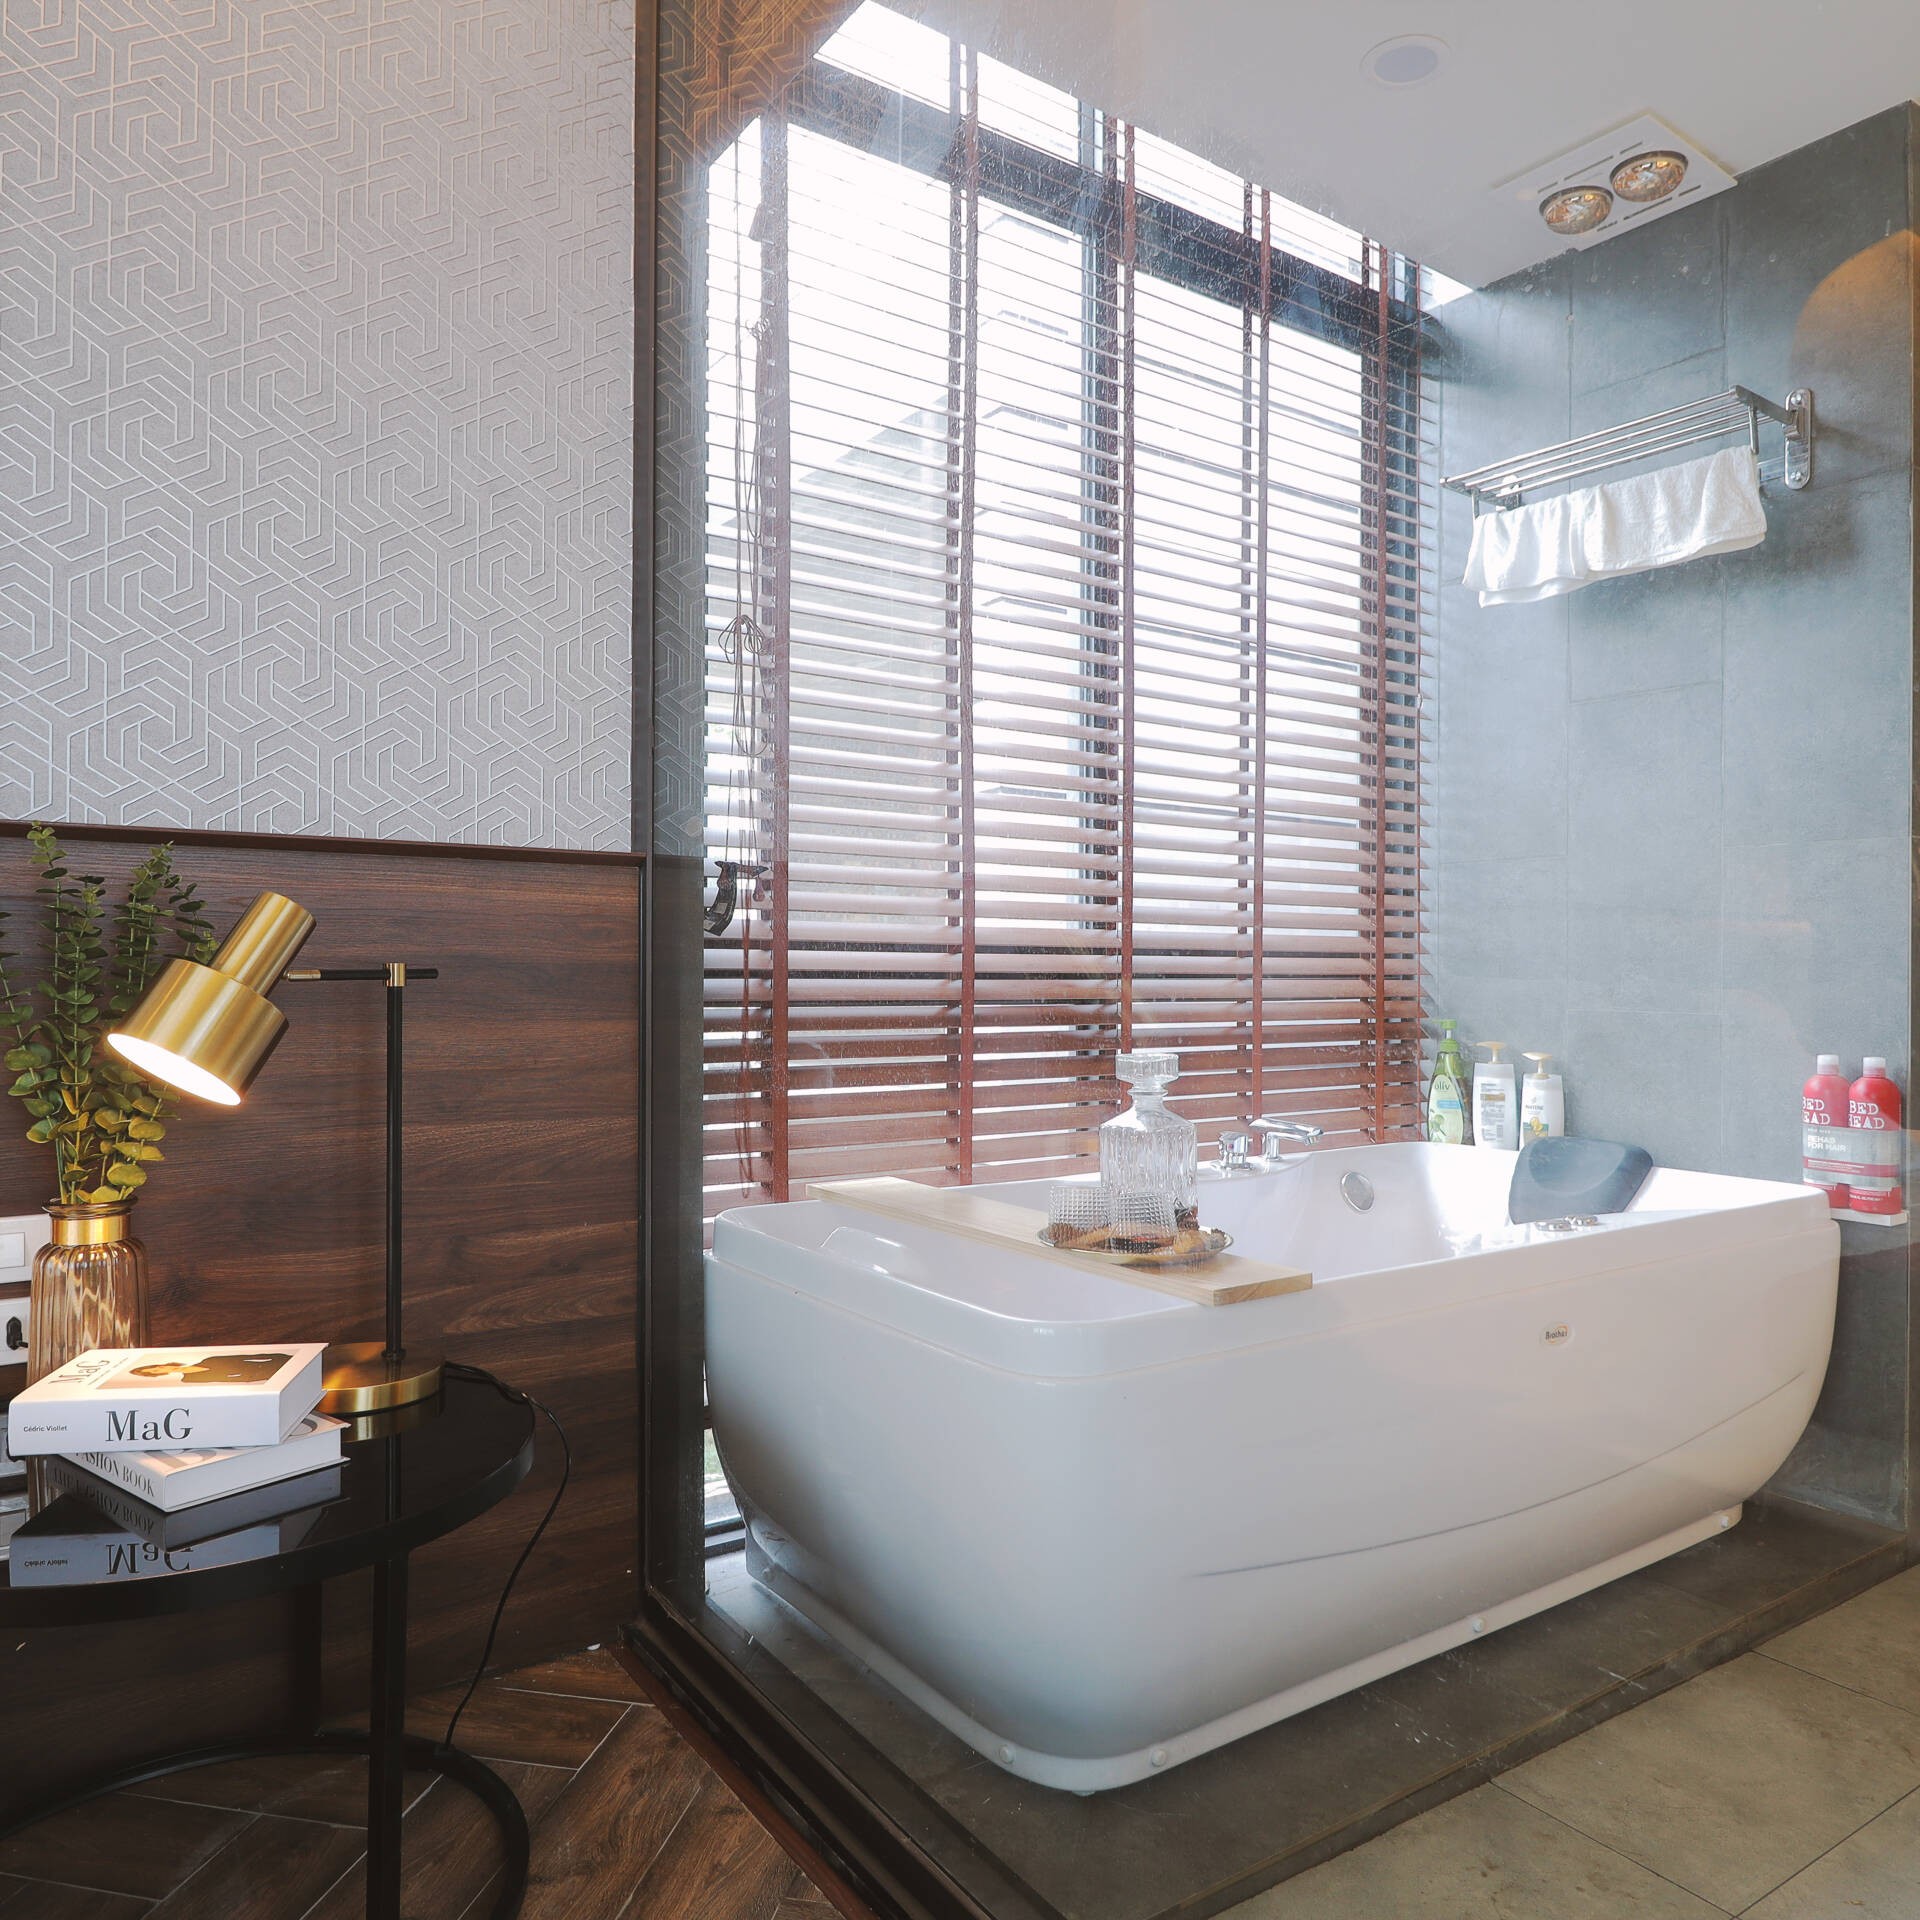 
Phòng tắm nằm ngay trong phòng ngủ, được ngăn cách nhau bởi tường kính, giúp mở rộng không gian, tạo sự khác biệt với các khu vực khác
